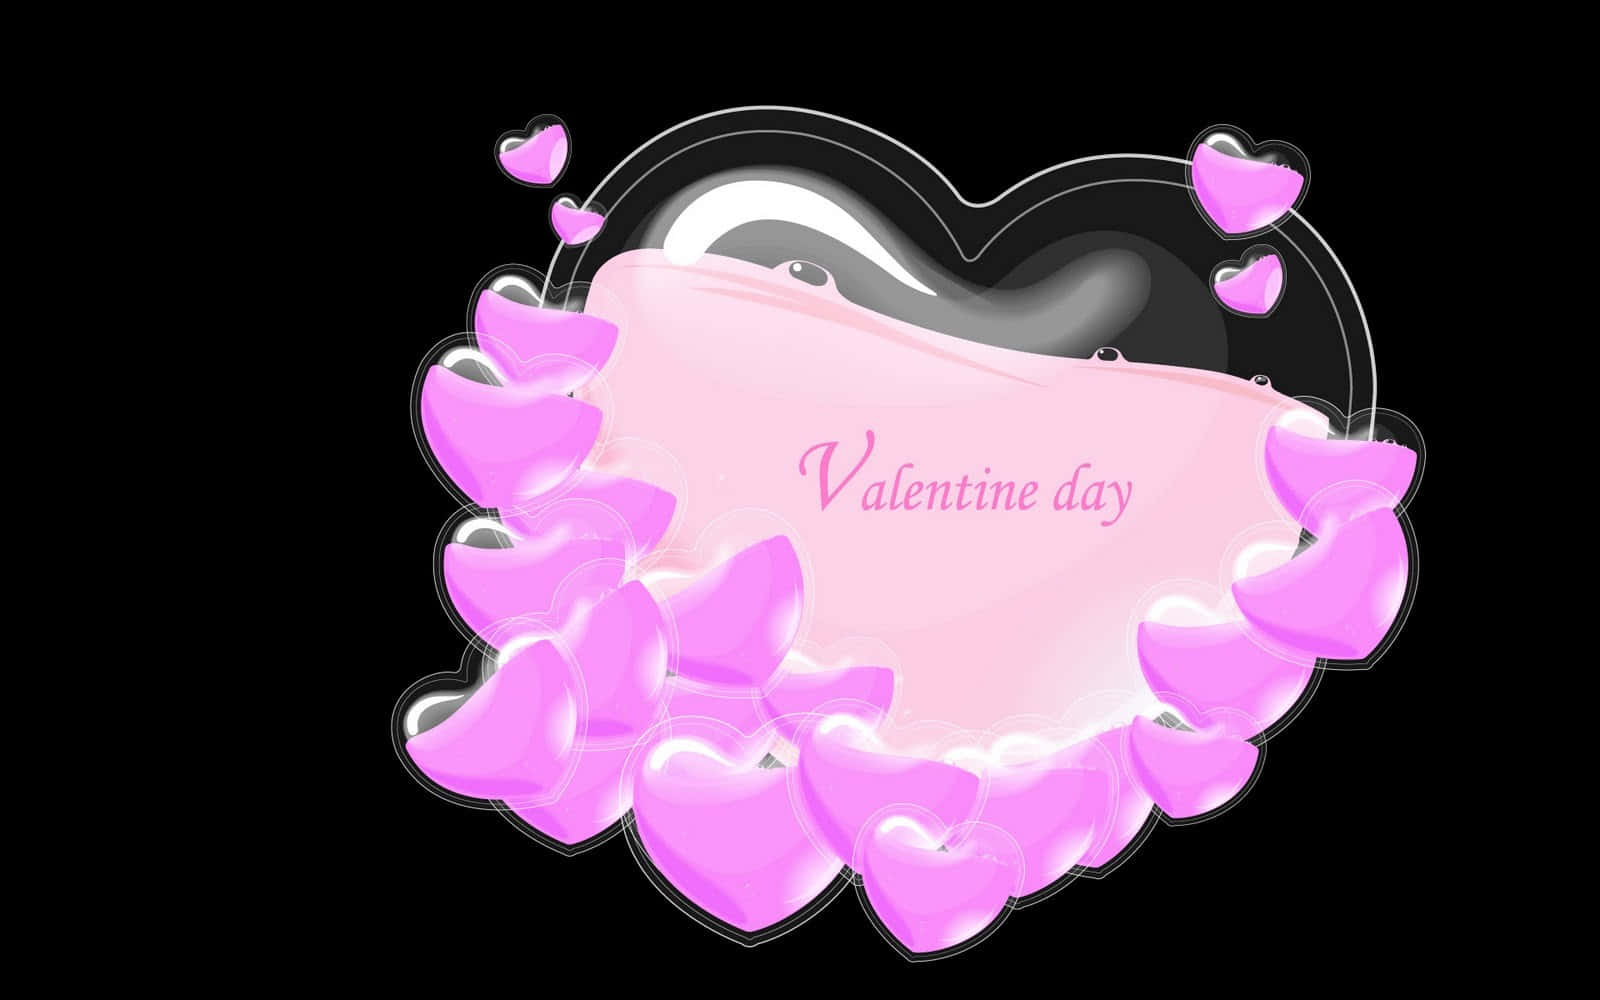 Valentine Day Valentine Day Valentine Day Valentine Day Valentine Day Valentine Day Valentine Day Valentine Day